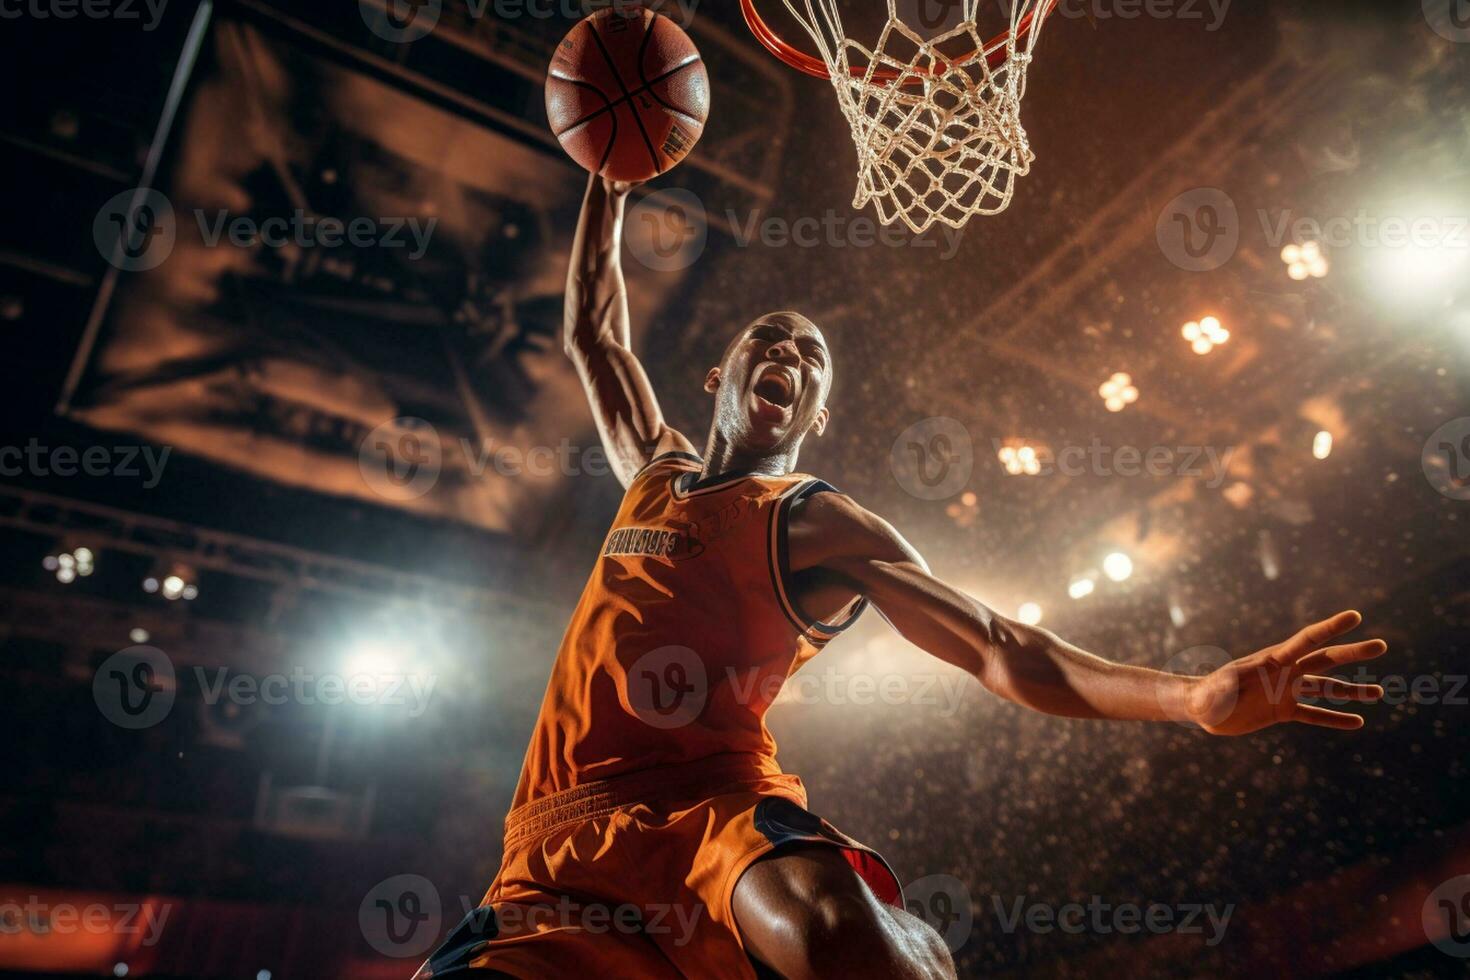 masculino baloncesto jugador jugando baloncesto en un concurrido interior baloncesto Corte foto